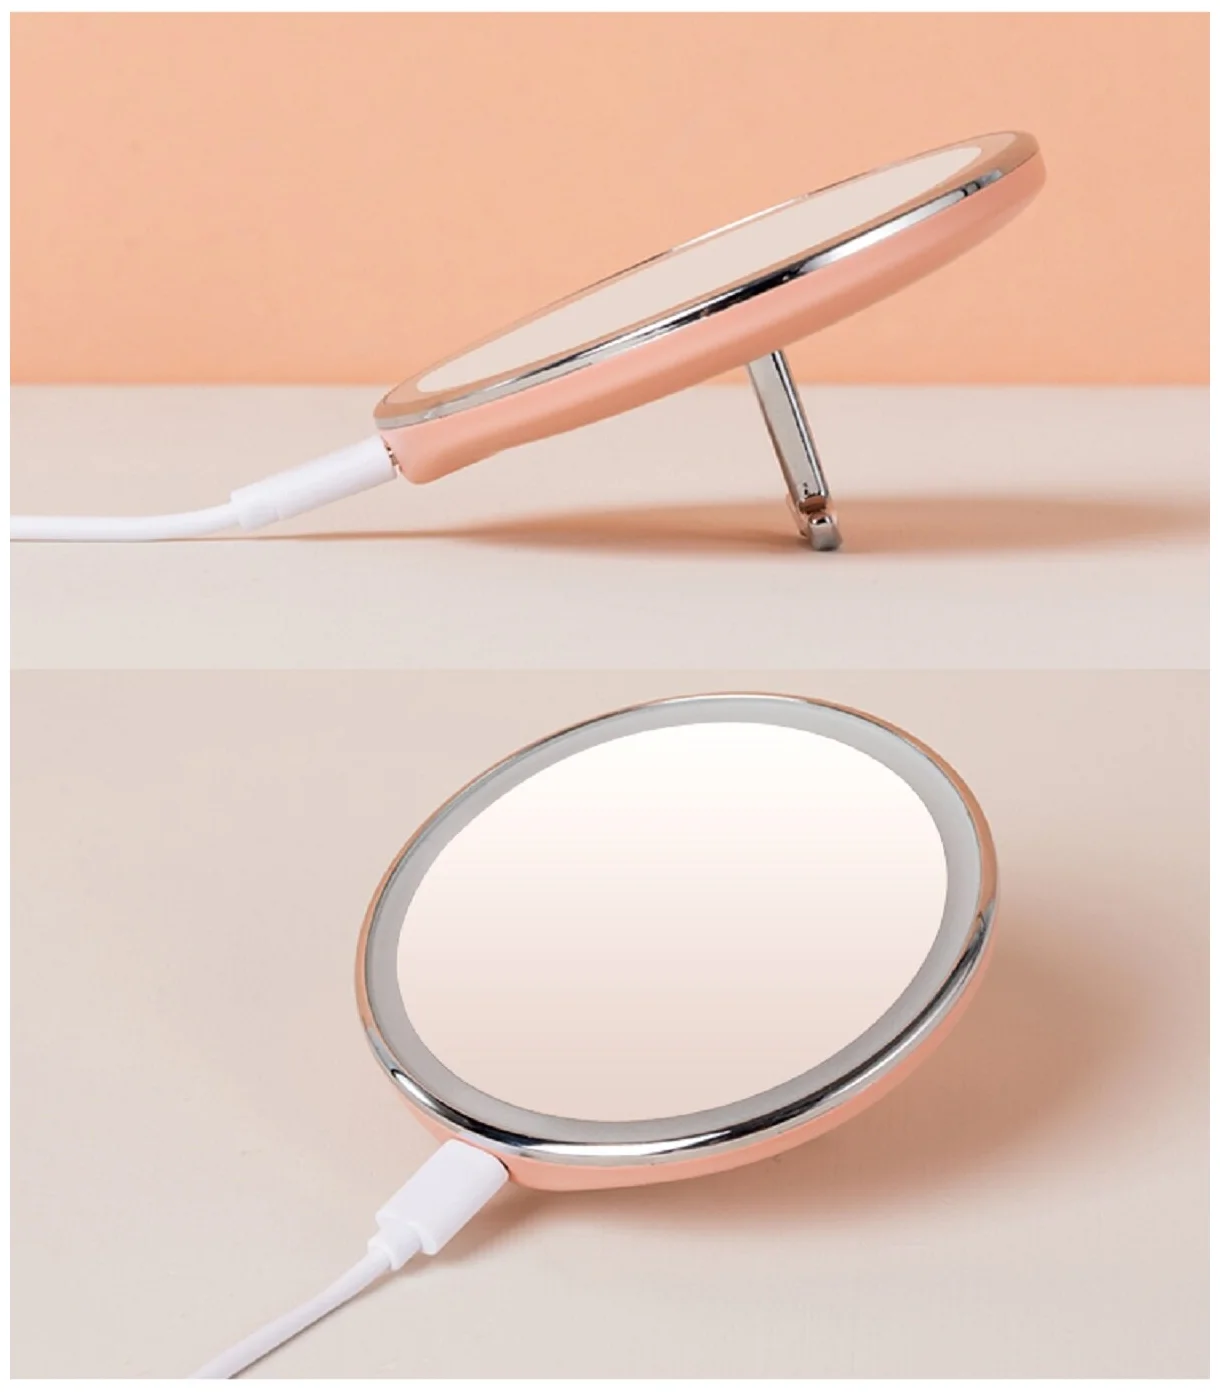 Зеркало для макияжа Xiaomi Jordan Judy LED (NV030) (С подсветкой) Розовое в Челябинске купить по недорогим ценам с доставкой